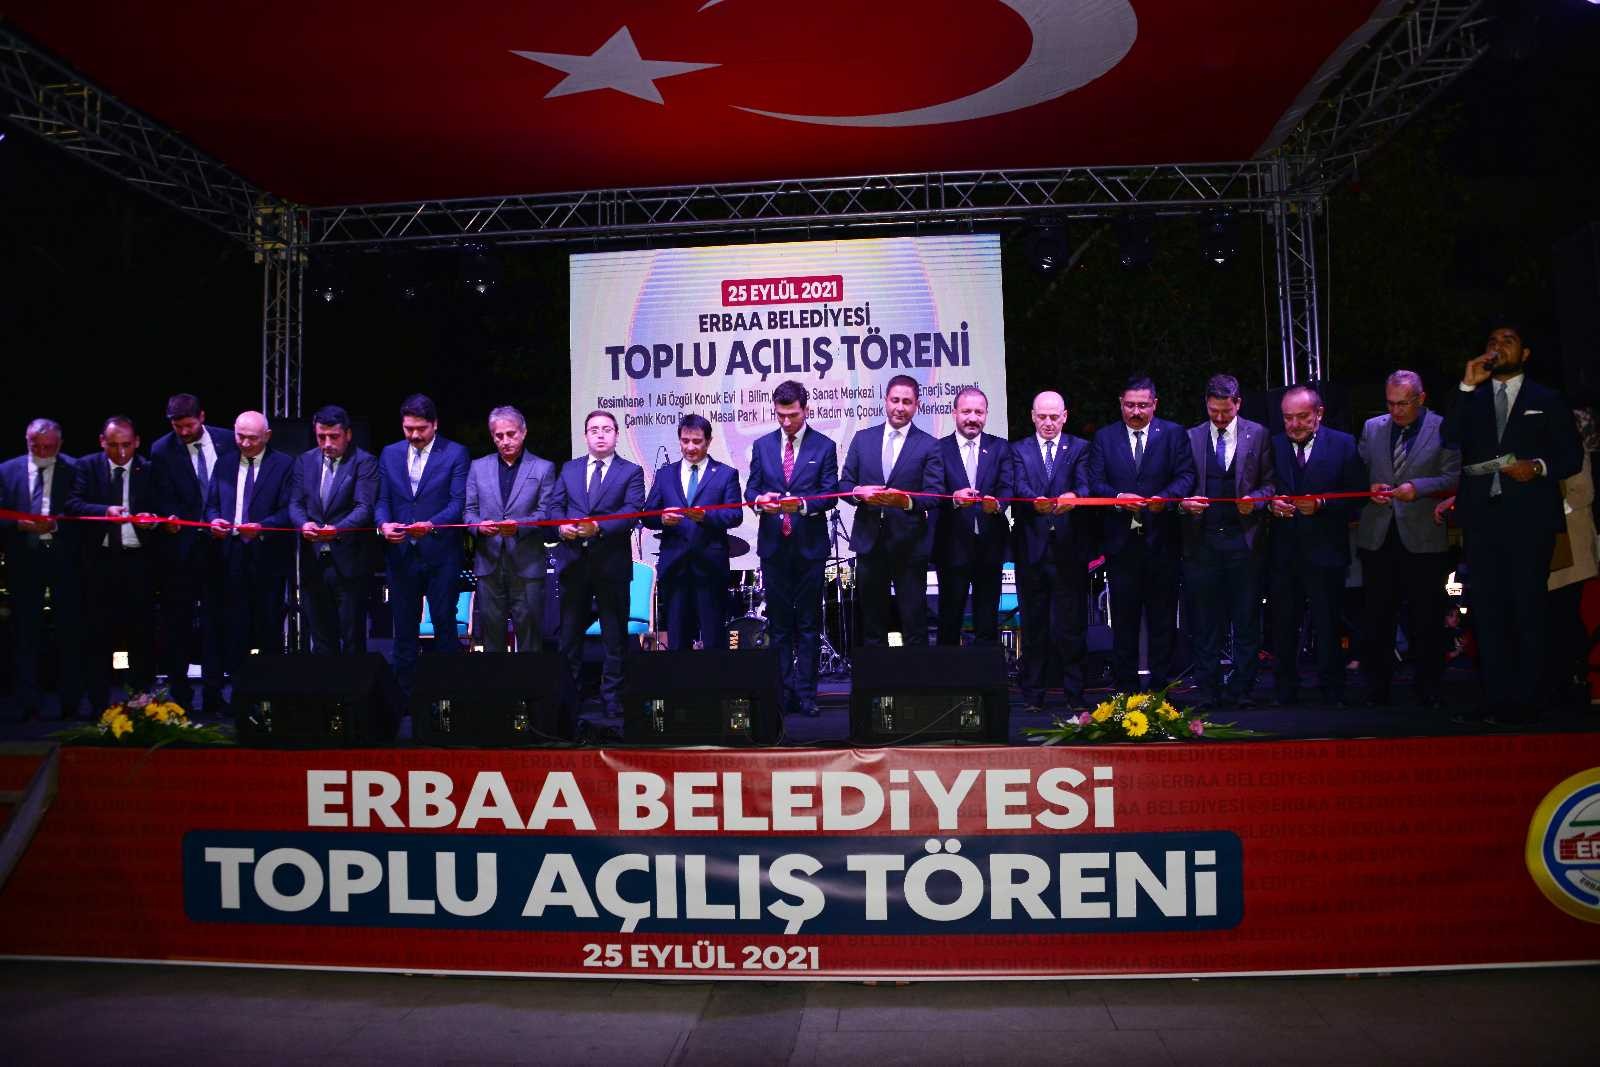 Erbaa’da 60 milyon TL’lik yatırımlar için toplu açılış töreni